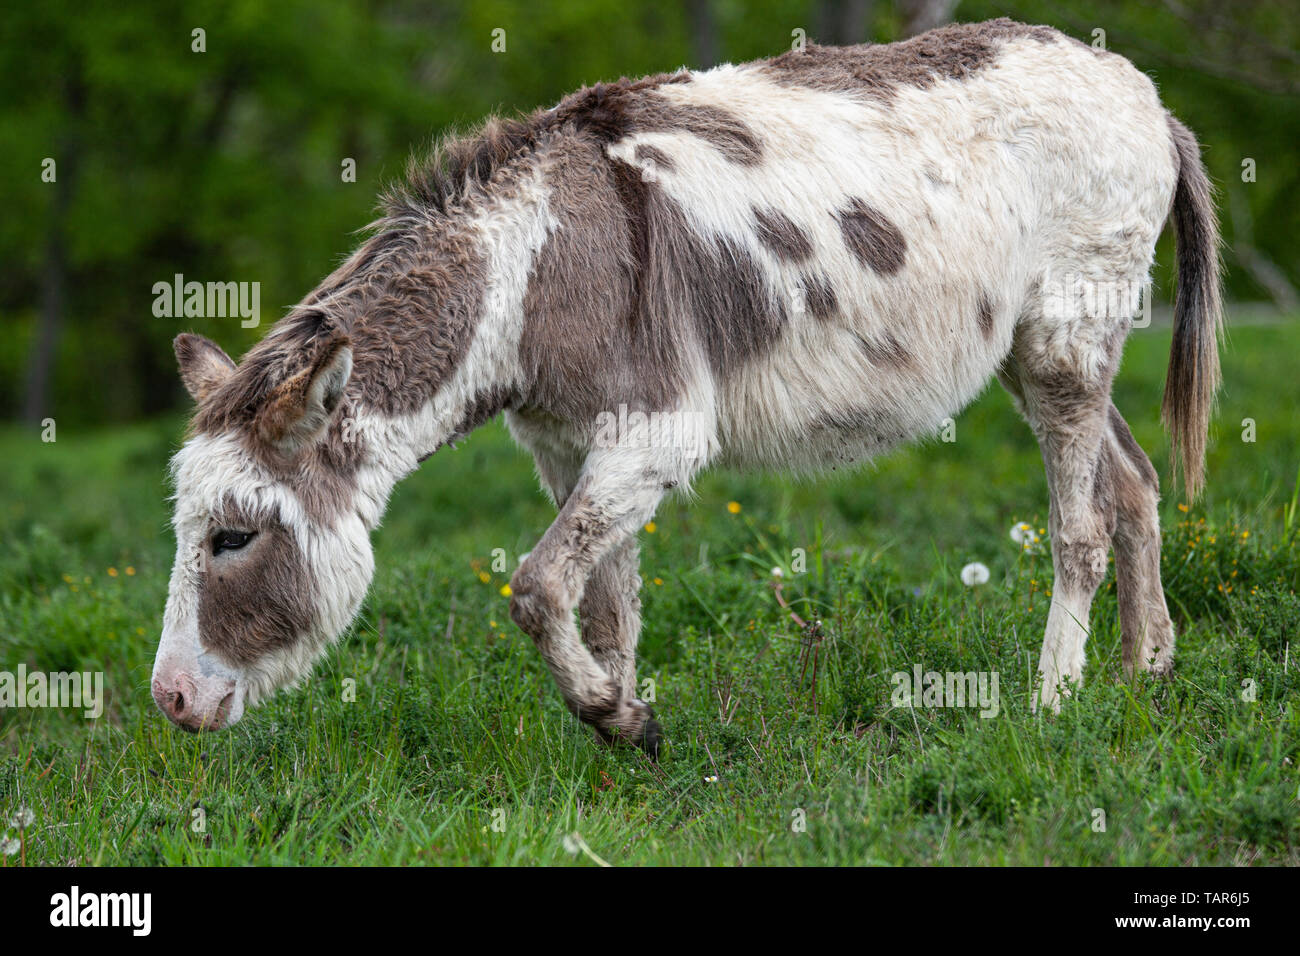 Ein Esel auf einer Wiese Stock Photo